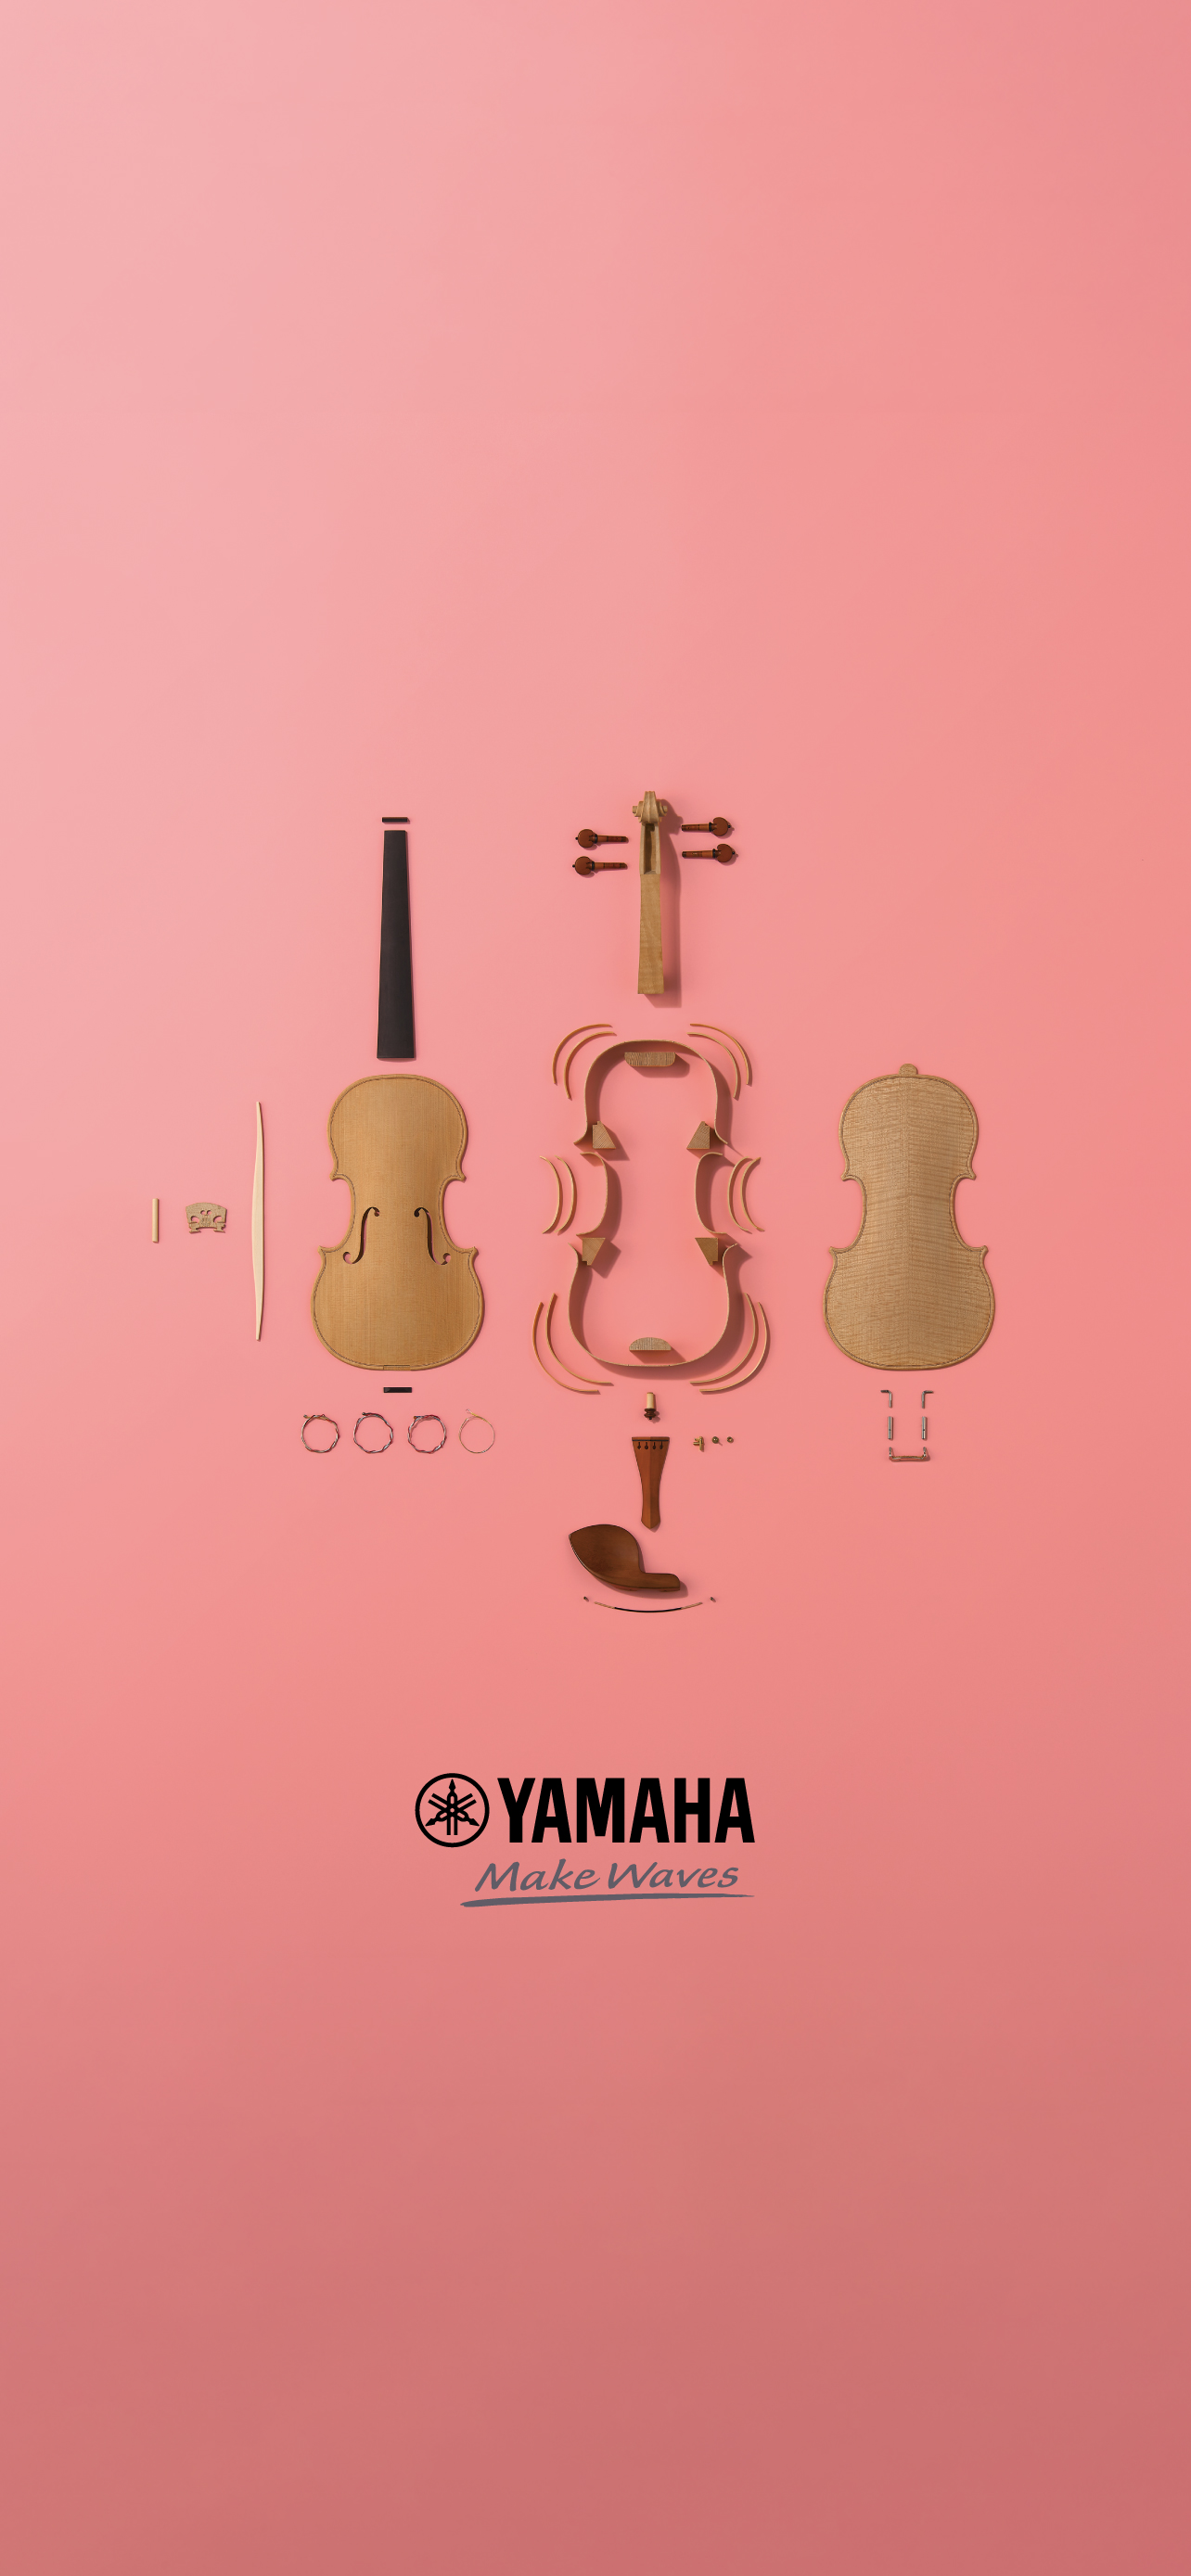 Calendar And Wallpaper Yamaha Corporation